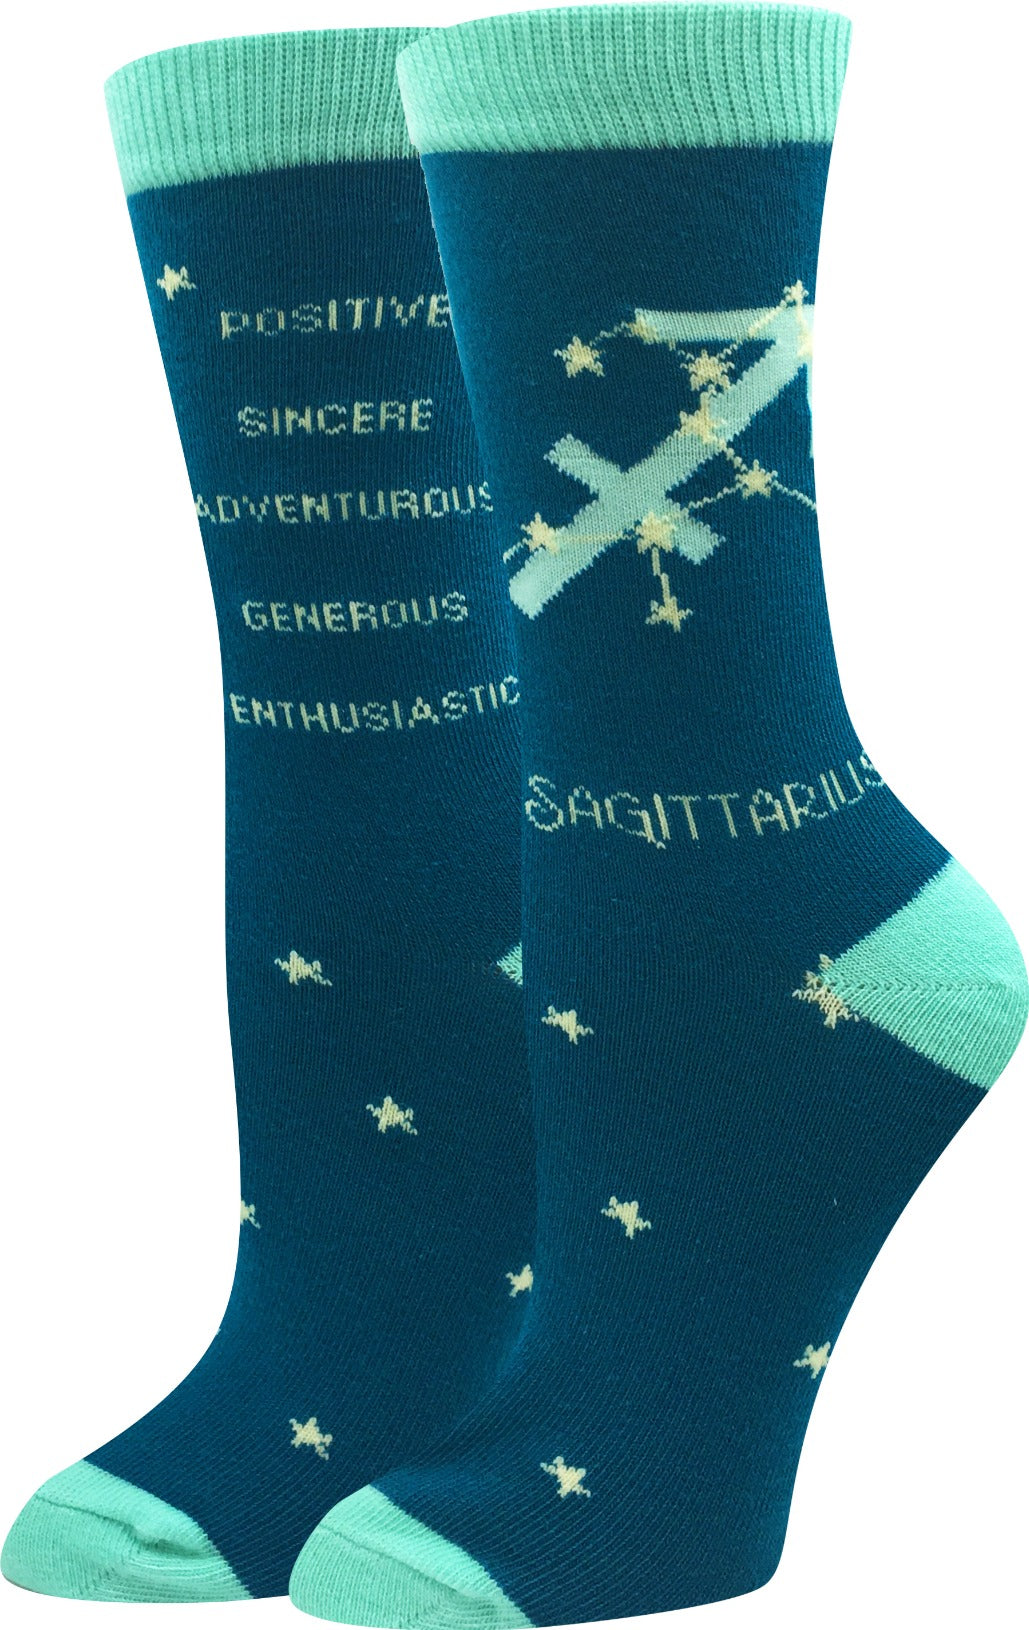 Sagittarius Socks